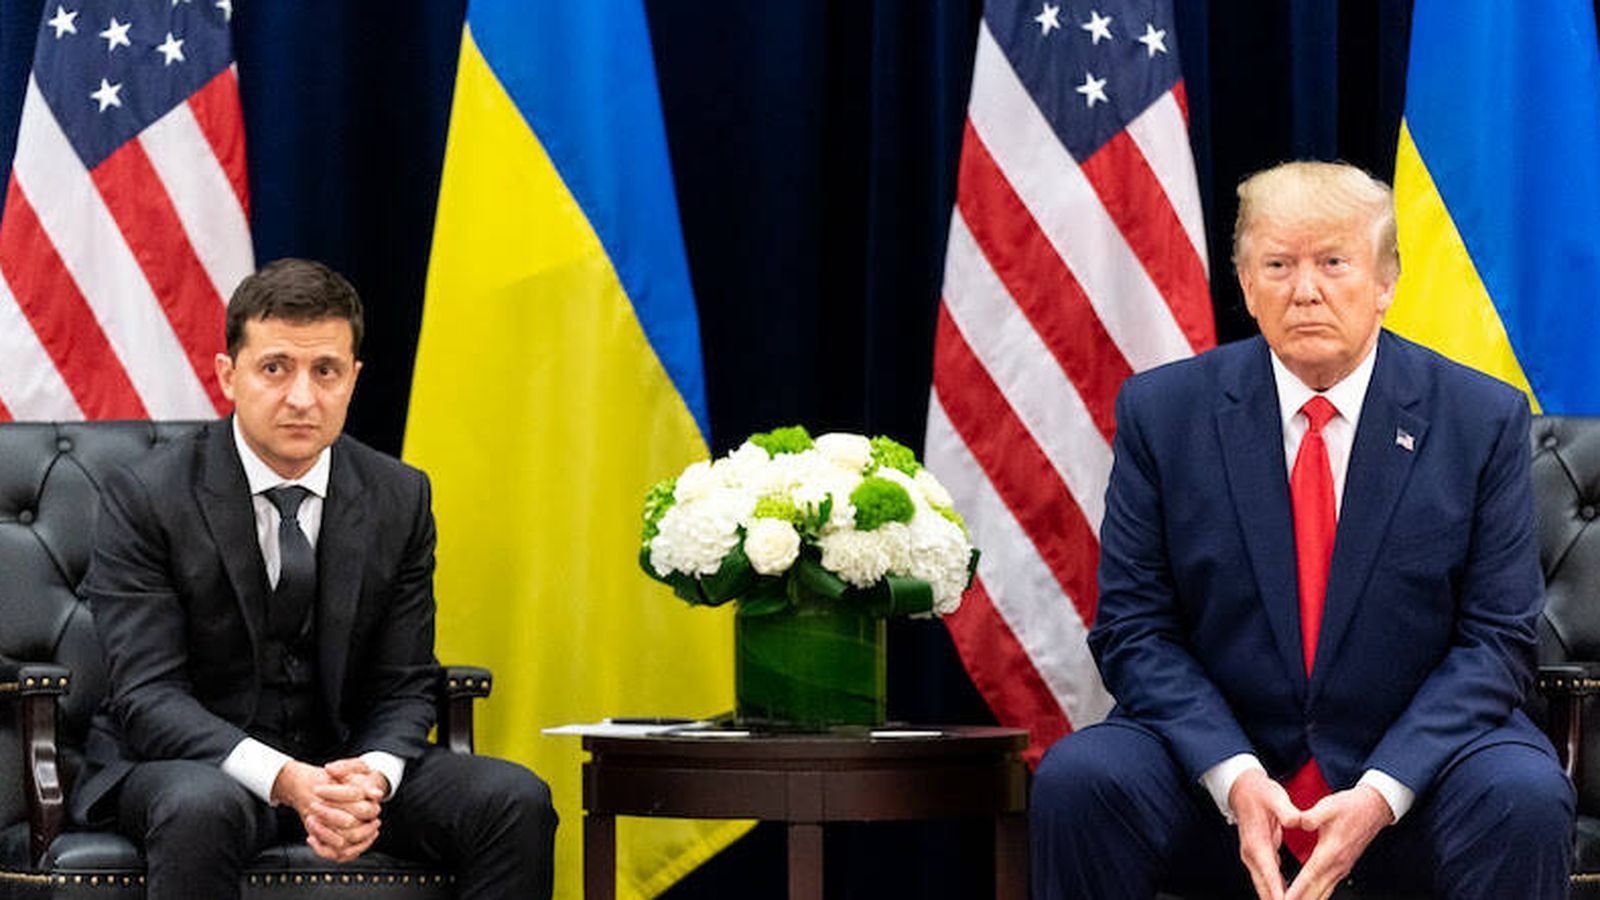 Desde 2019, Ucrania es un país complicado para Trump... y viceversa. (Casa Blanca / Shealah Craighead)